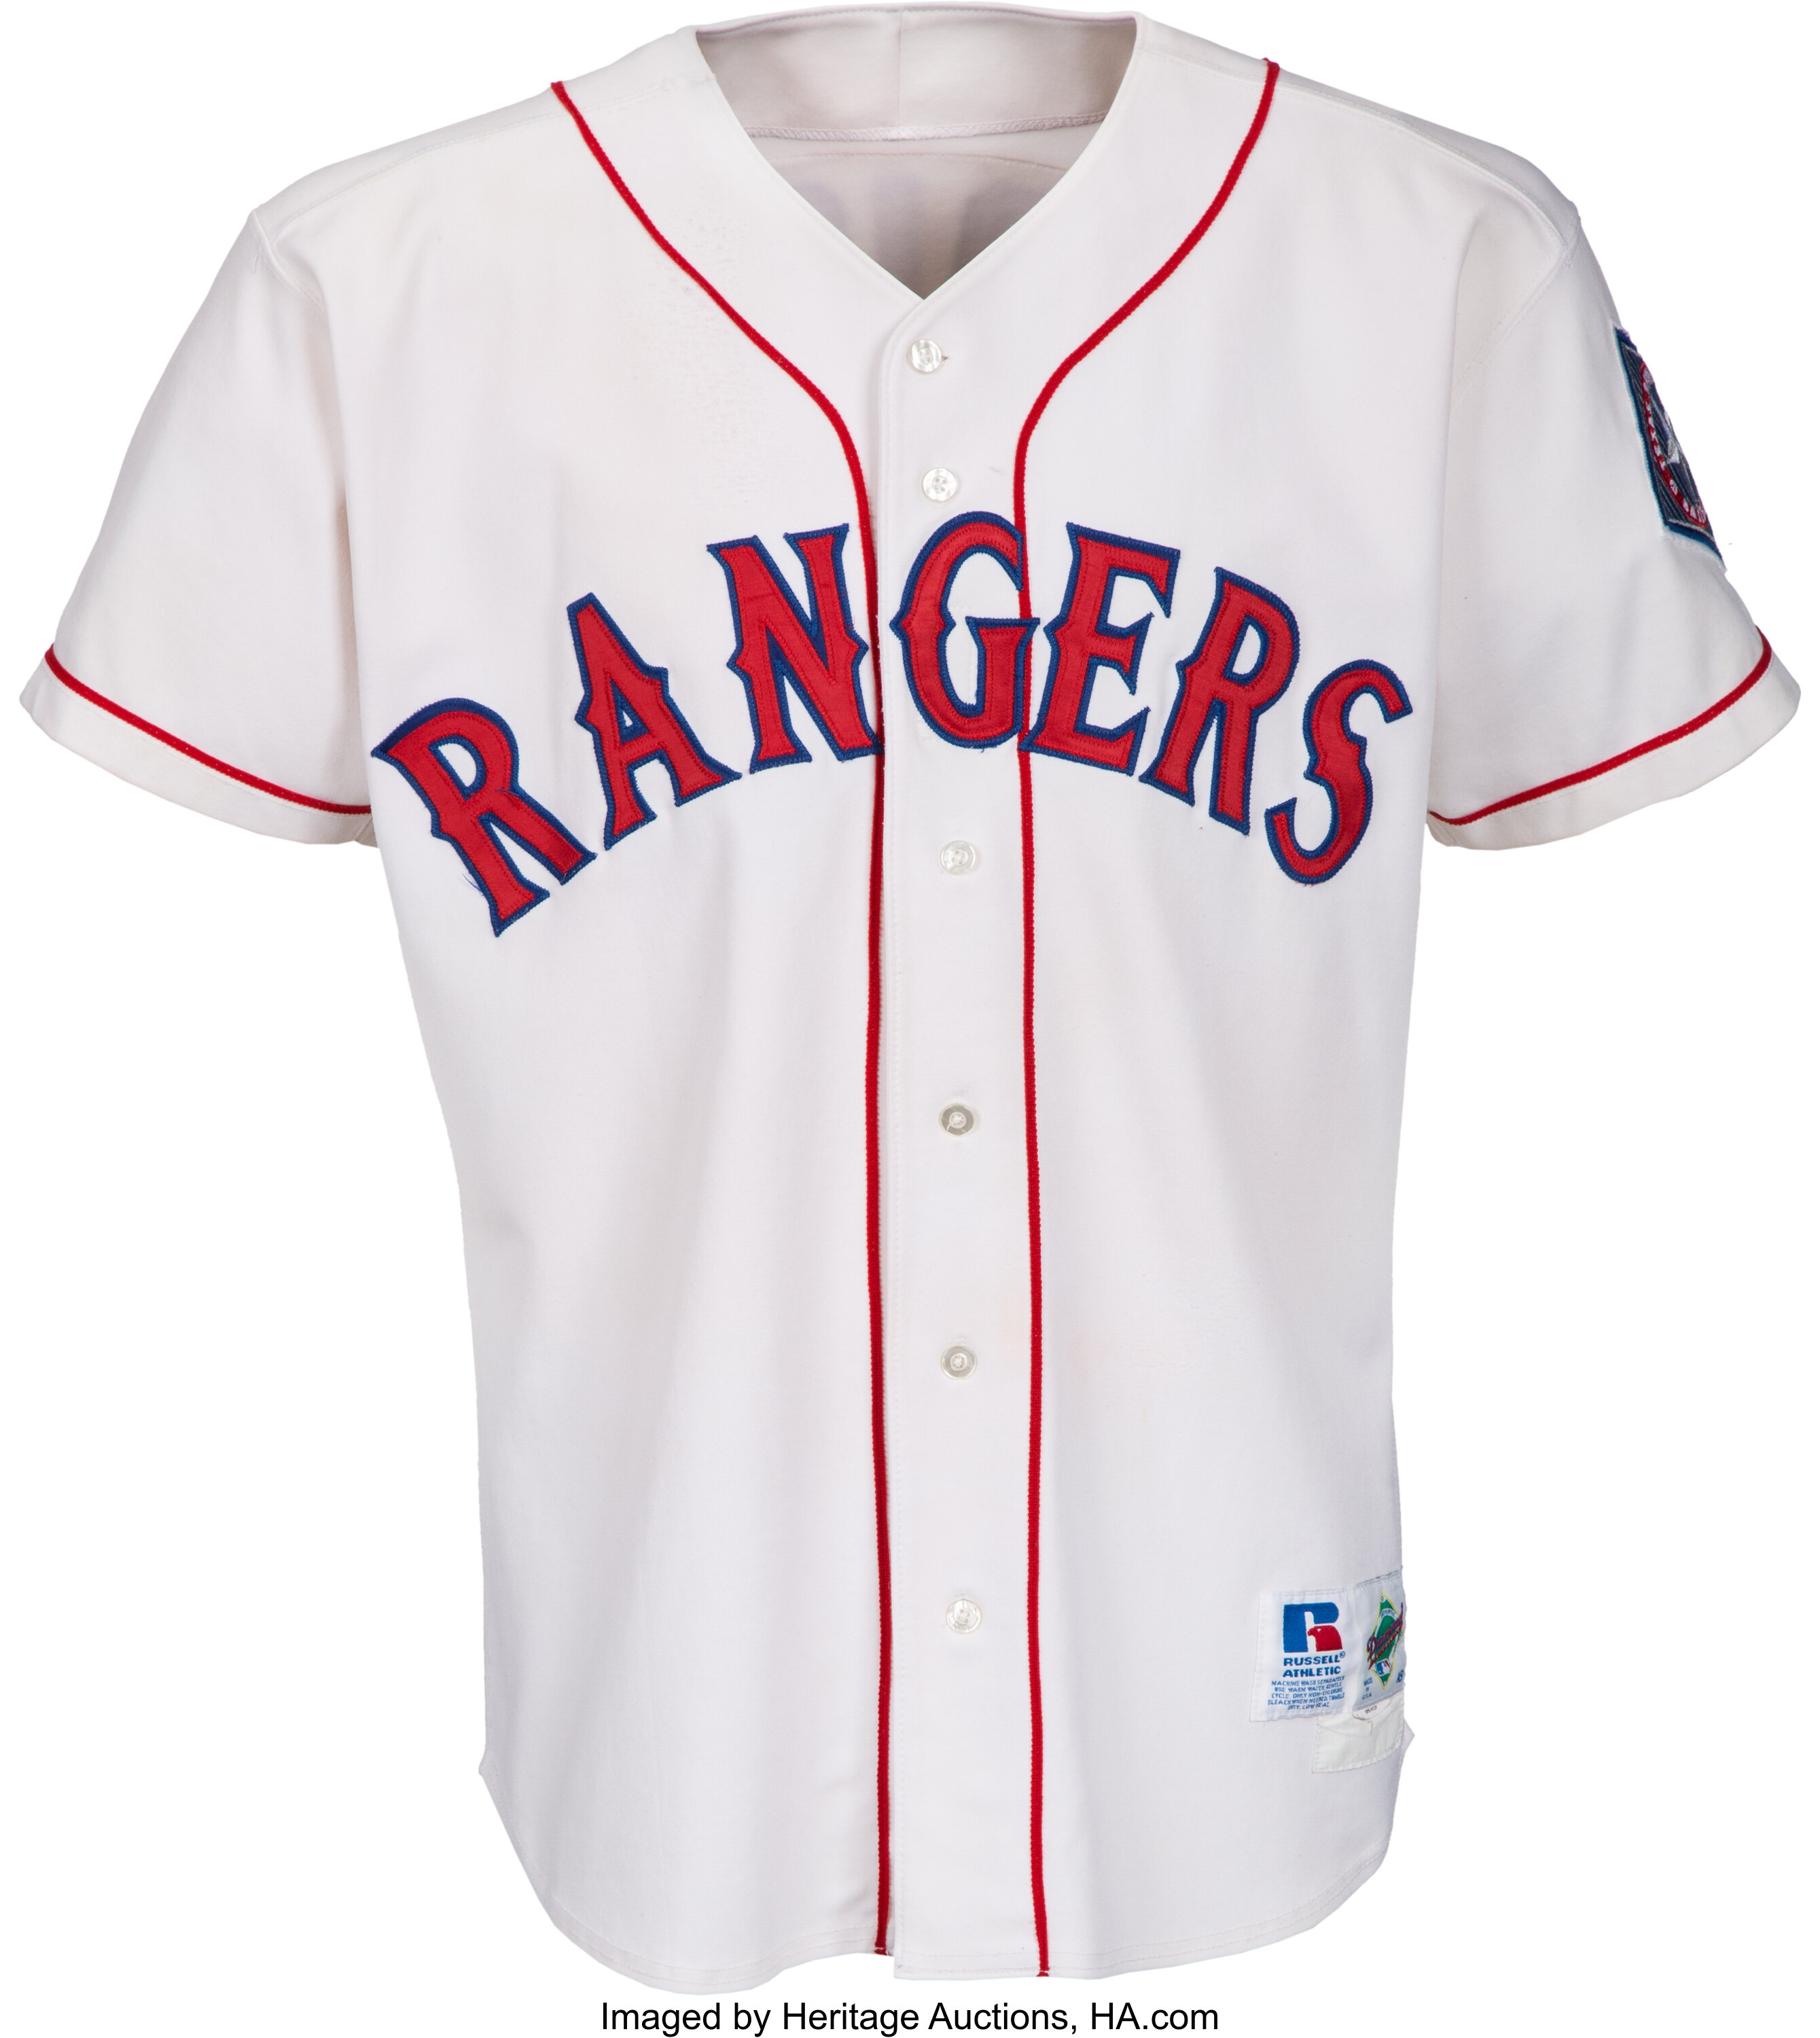 Texas Rangers Jerseys, Rangers Jersey, Texas Rangers Uniforms